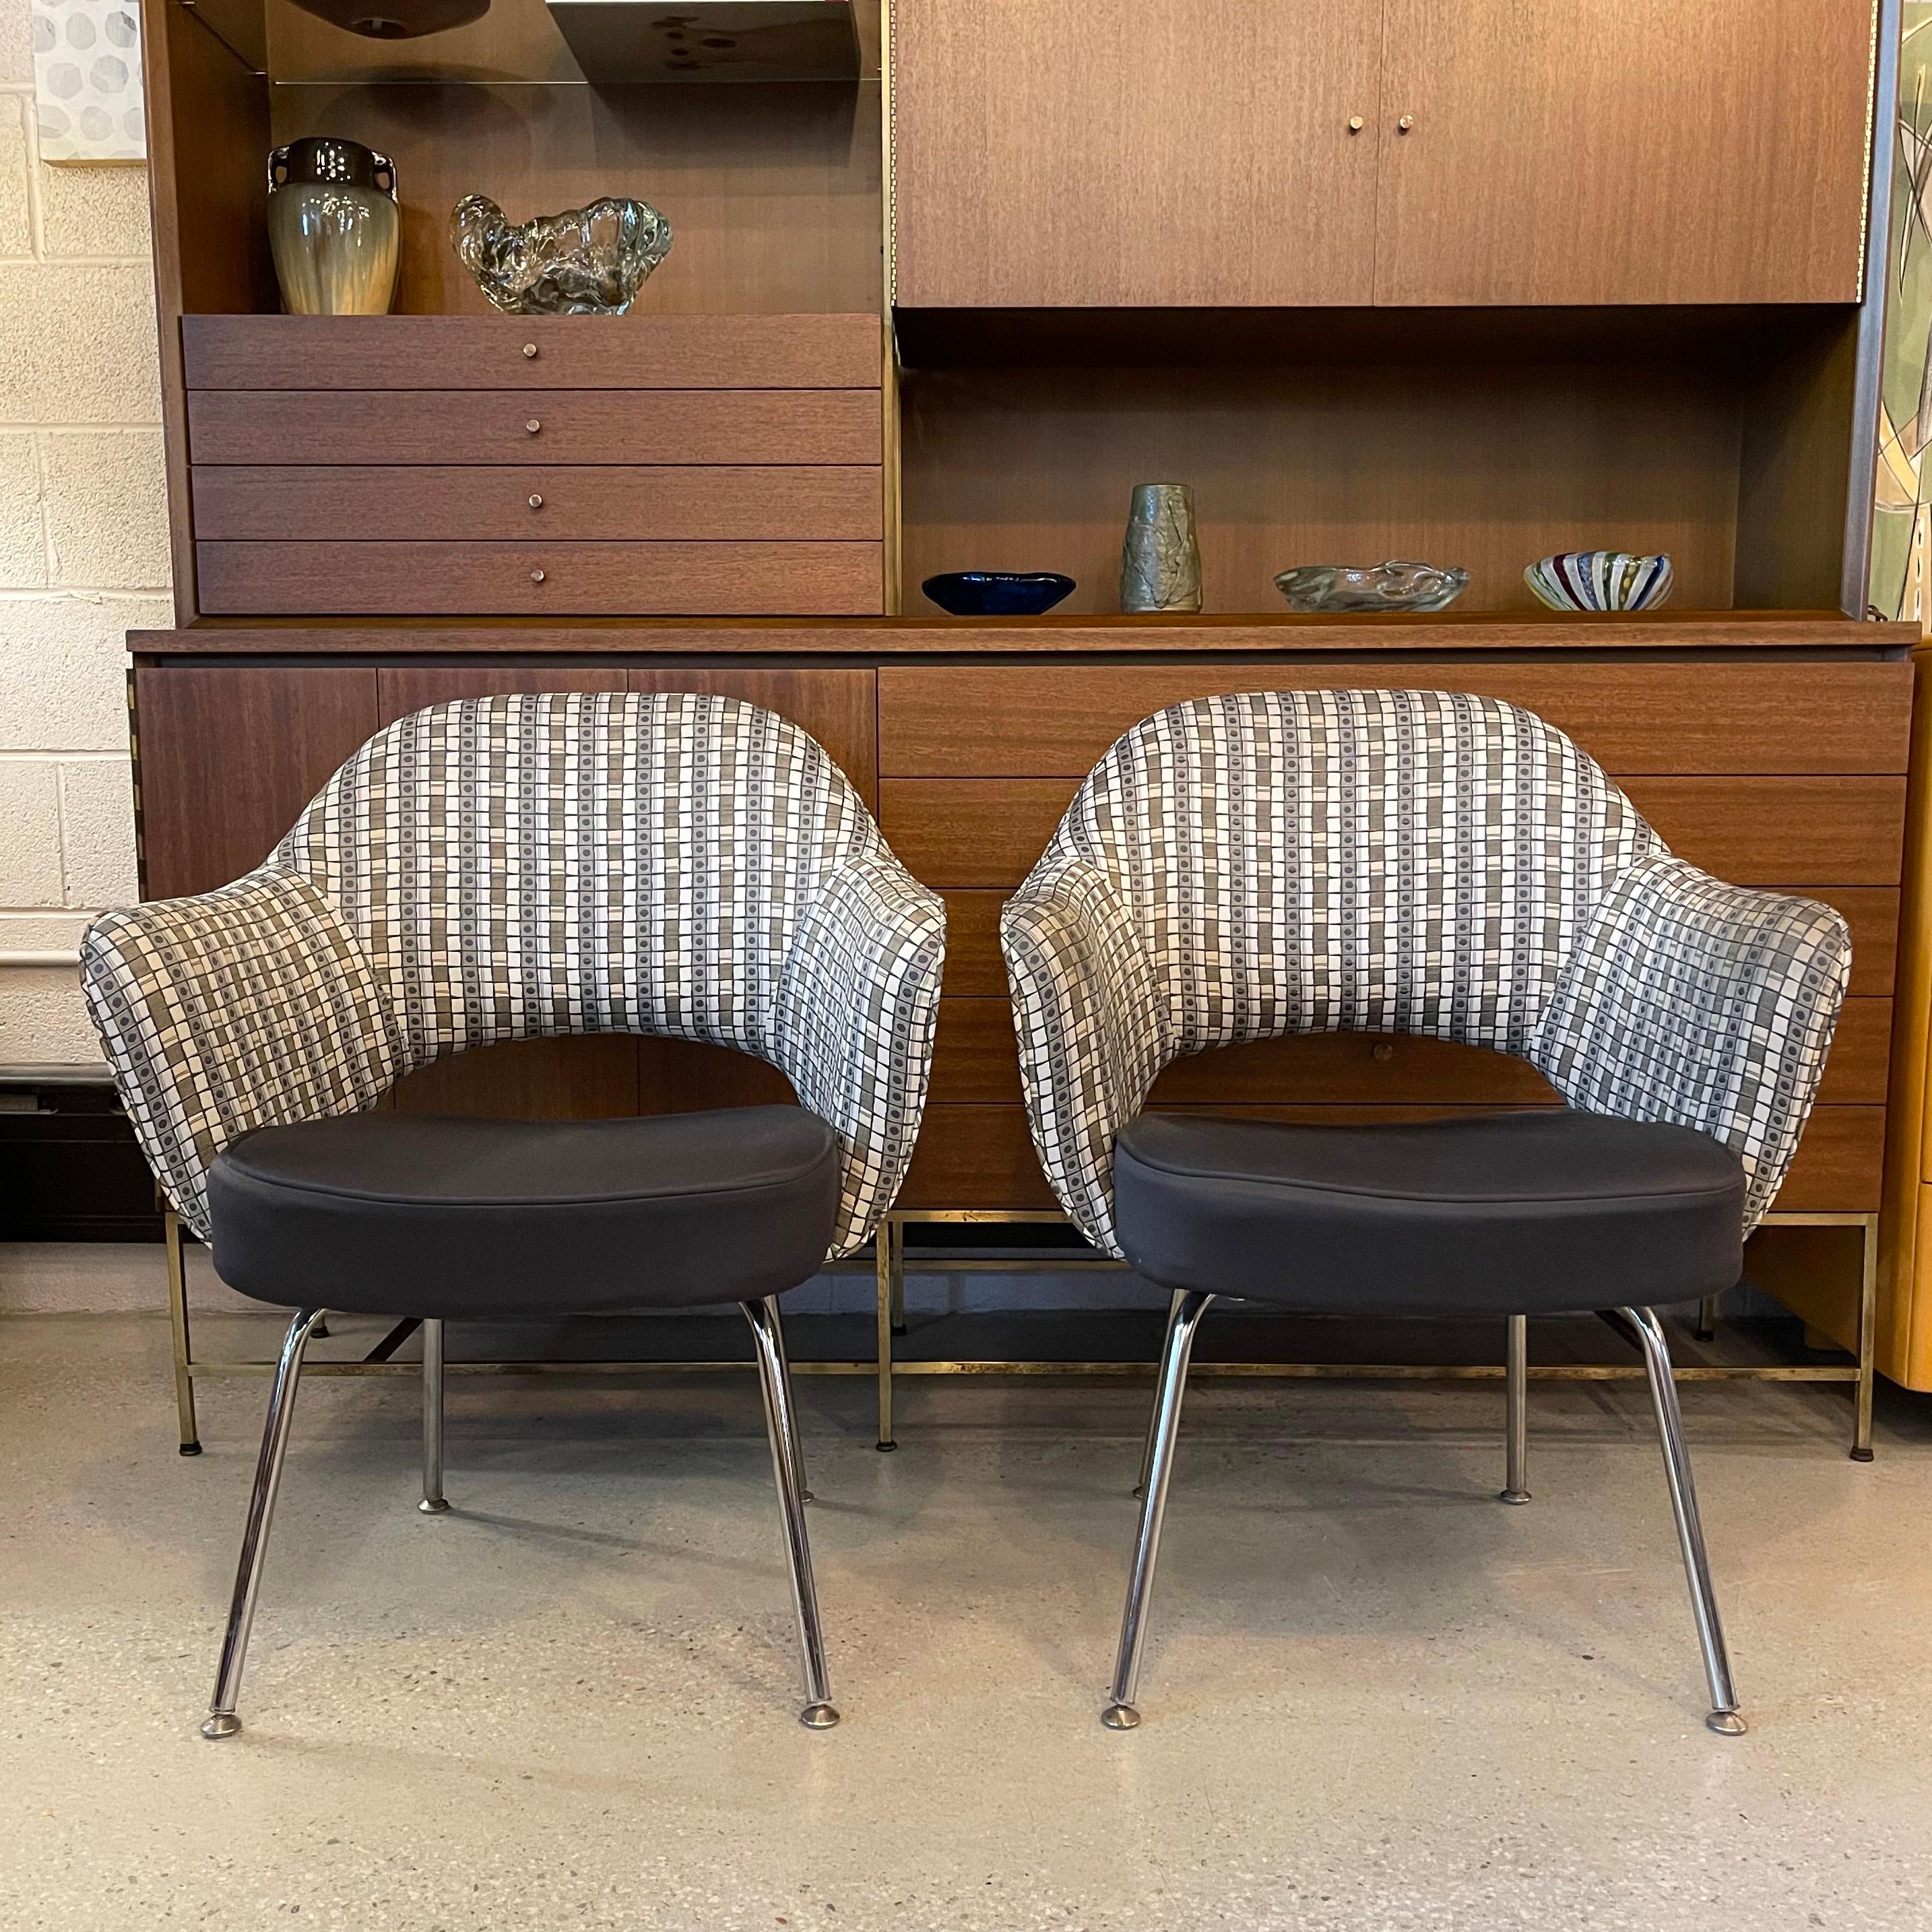 Paire de fauteuils de direction d'Eero Saarinen pour Knoll, avec assise en nylon noir et dossier à motifs géométriques contrastés. Ces chaises emblématiques sont extrêmement confortables et sont l'incarnation du design moderne du milieu du siècle. 